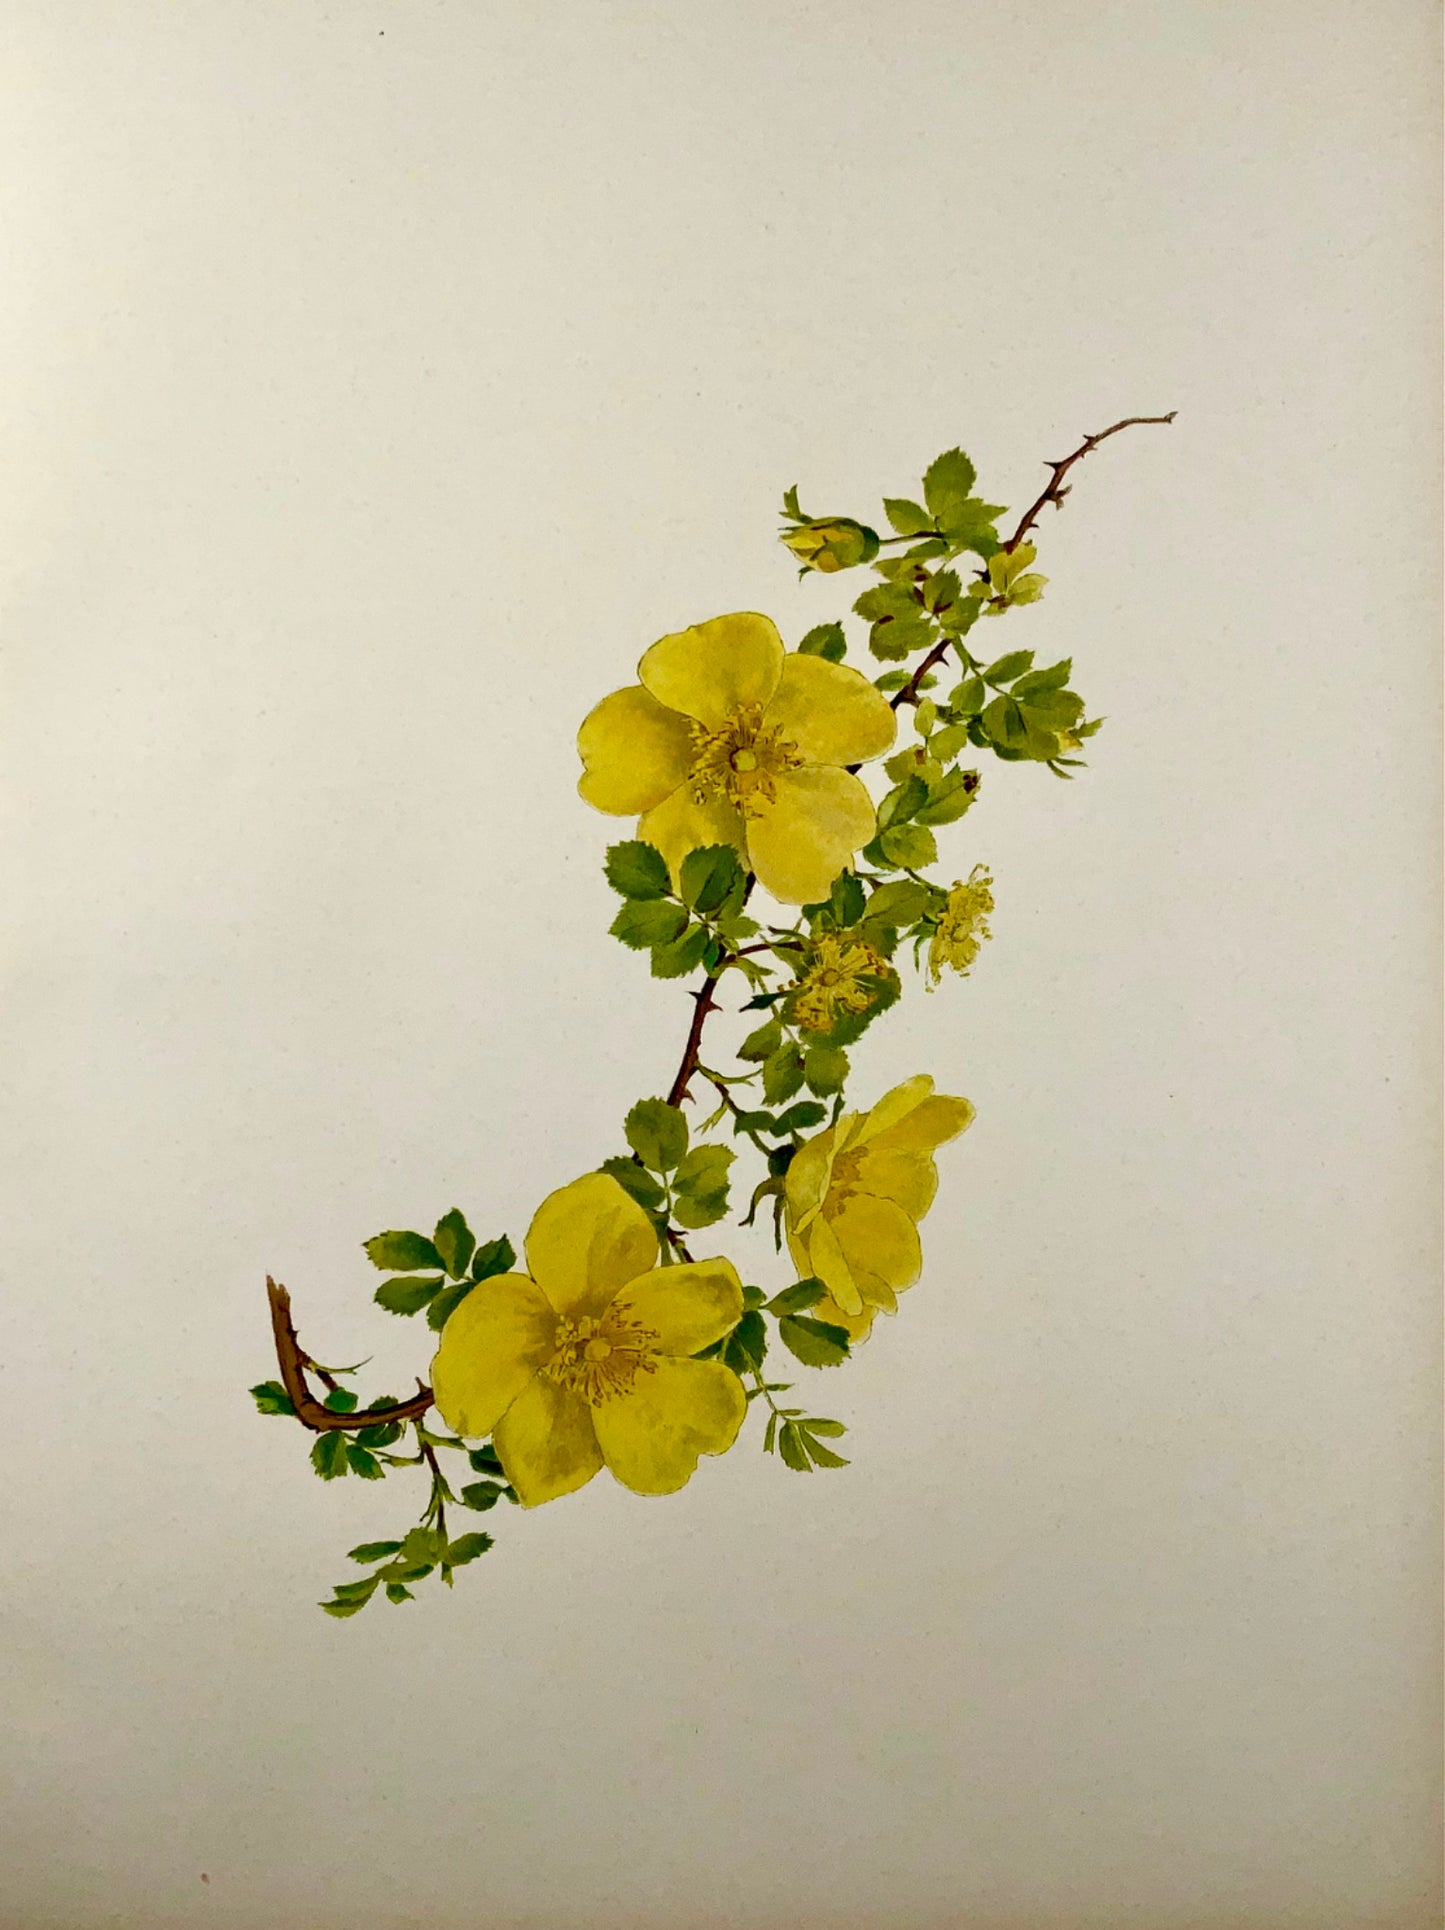 1914 Rose jaune, foetida, grand folio 37 cm, Willmott, EA (né en 1858), botanique